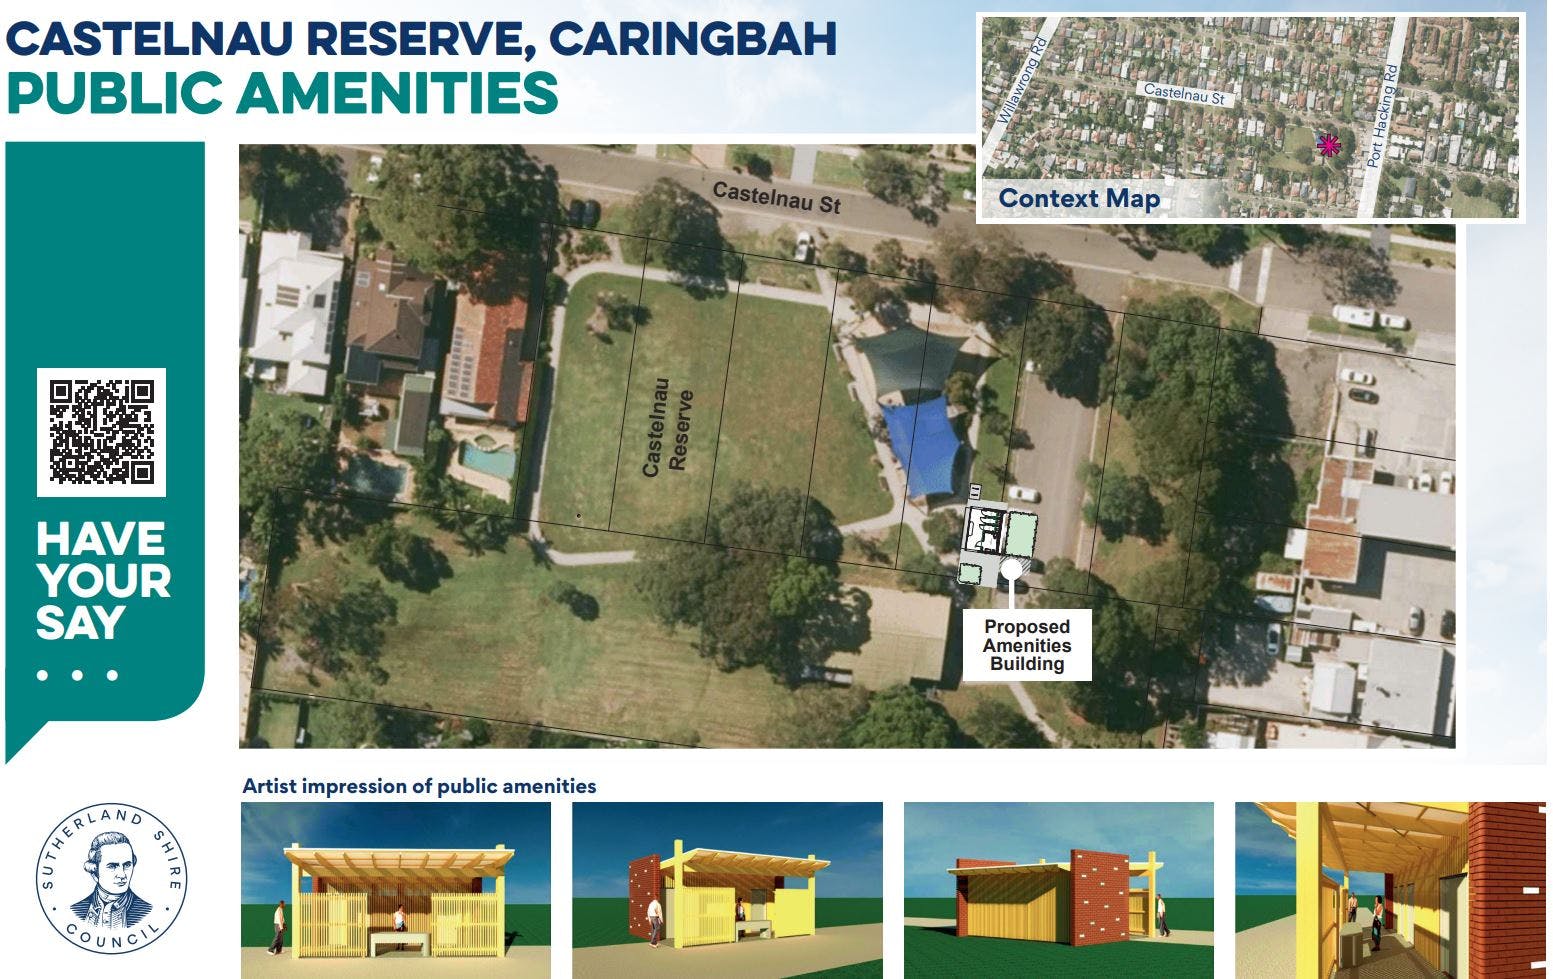 Castelnau Reserve, Caringbah public amenities concept plan 